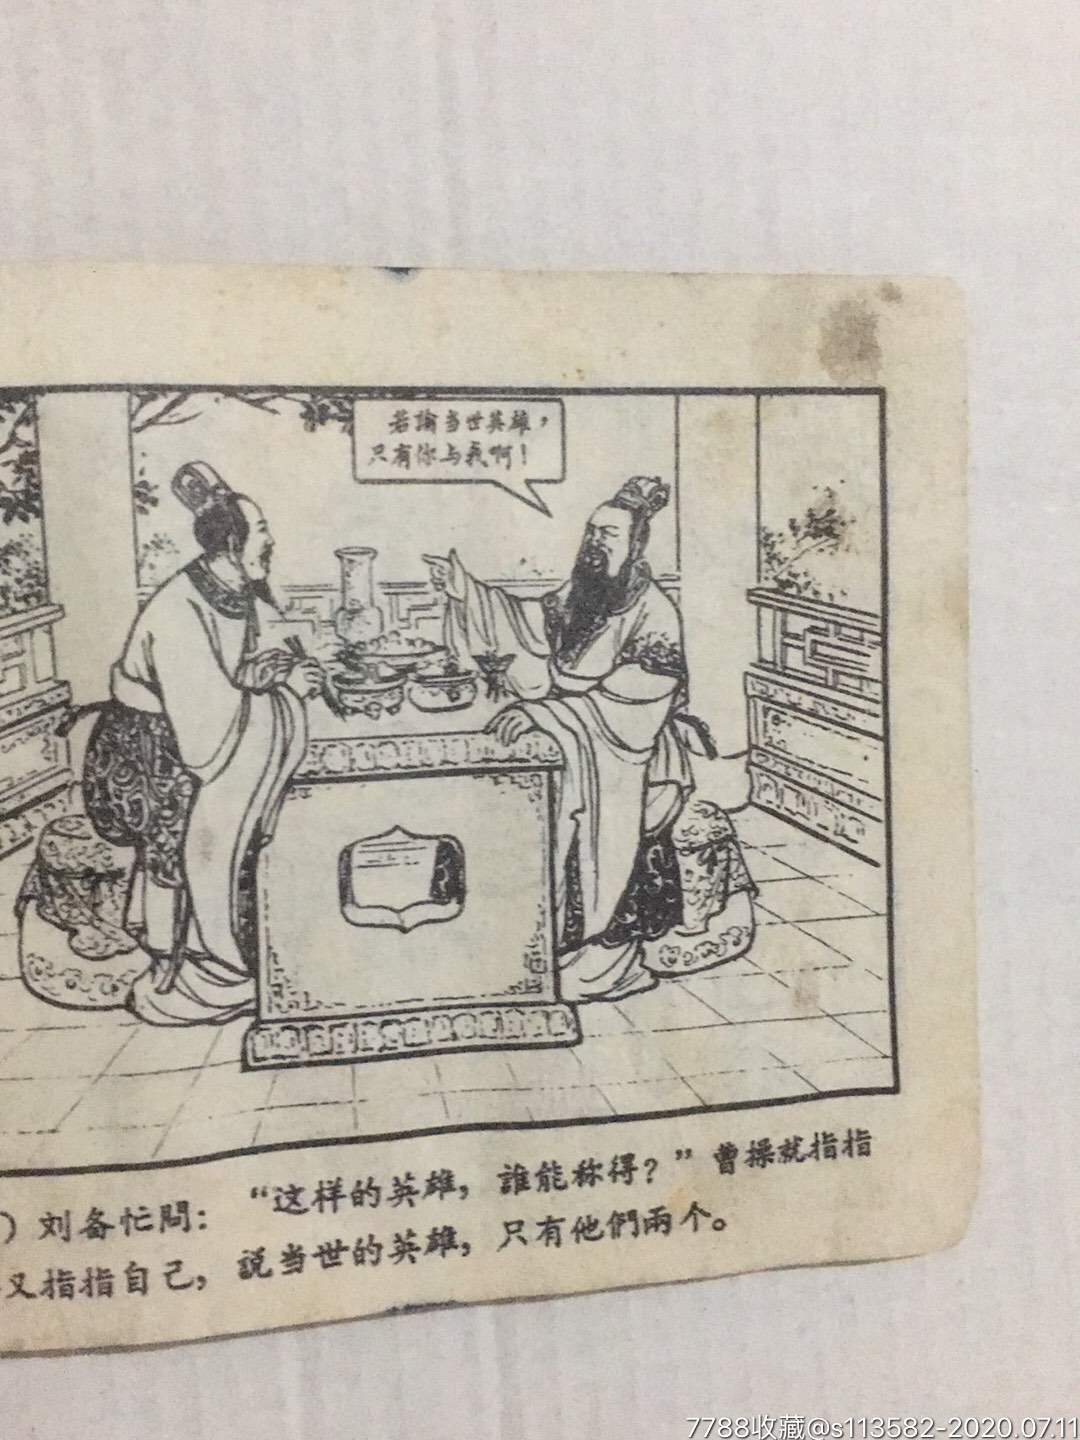 煮酒论英雄,连环画/小人书,六十年代(20世纪),绘画版连环画,60开,古典